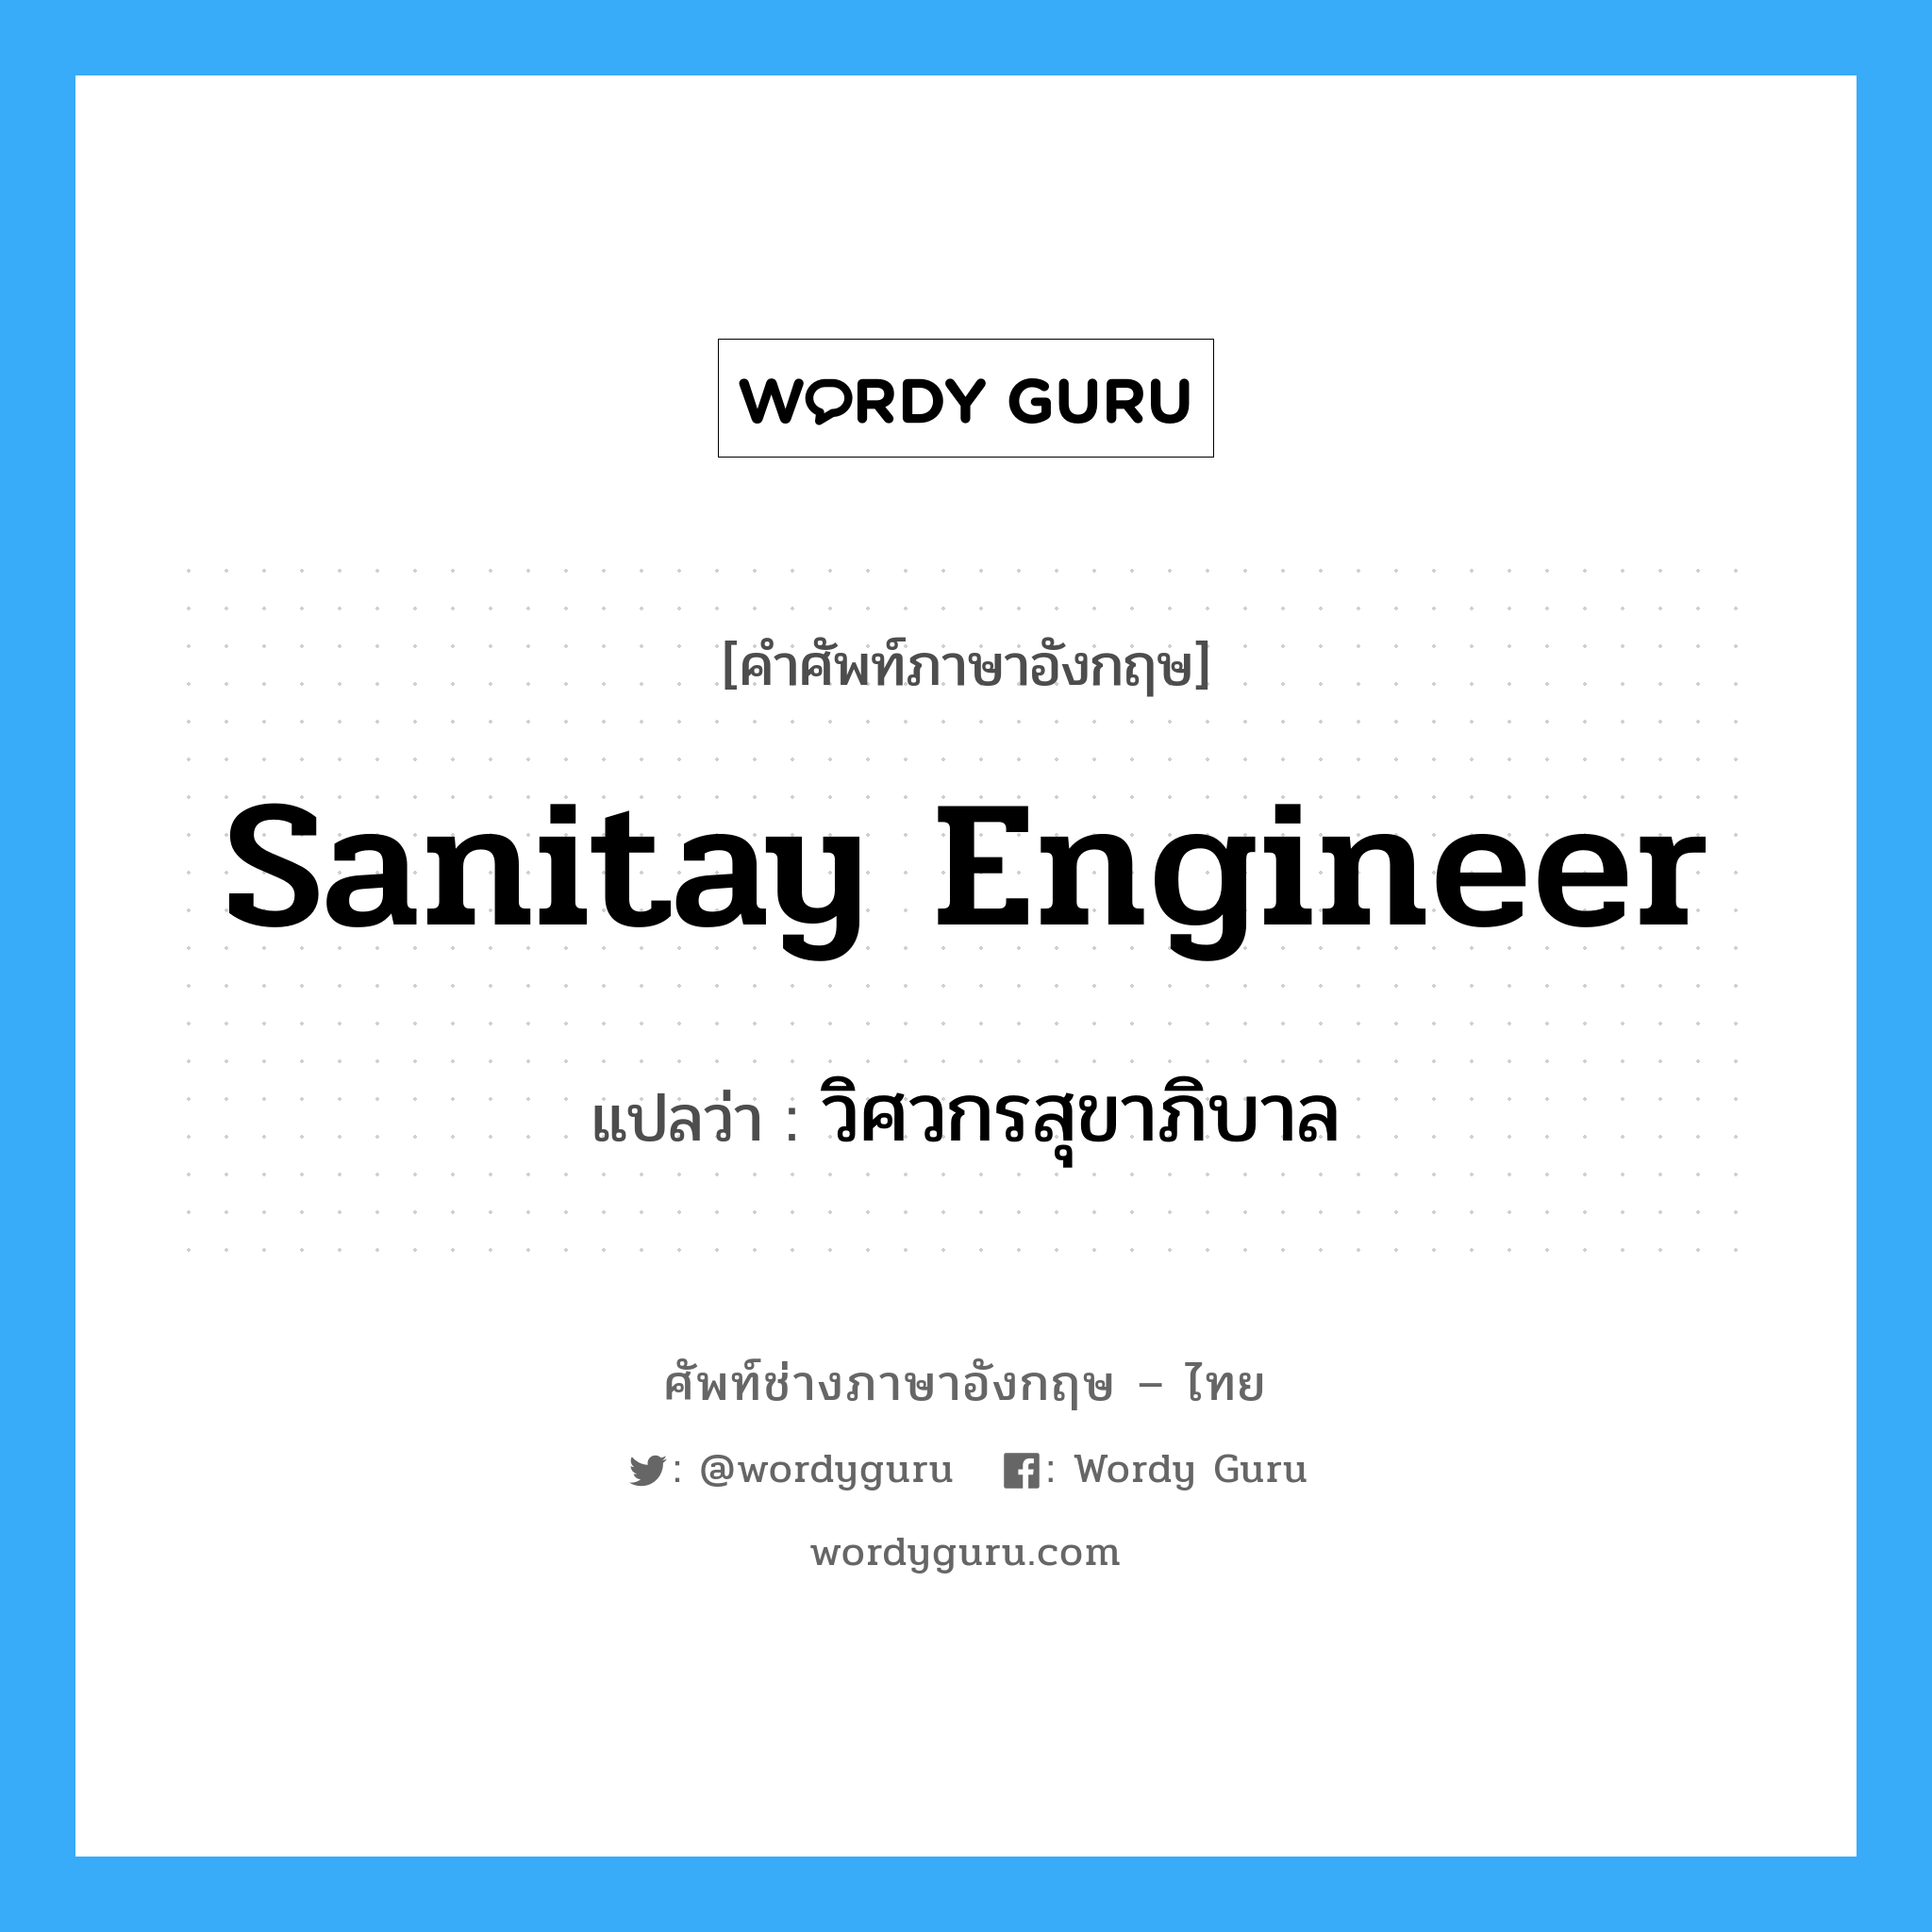 sanitay engineer แปลว่า?, คำศัพท์ช่างภาษาอังกฤษ - ไทย sanitay engineer คำศัพท์ภาษาอังกฤษ sanitay engineer แปลว่า วิศวกรสุขาภิบาล